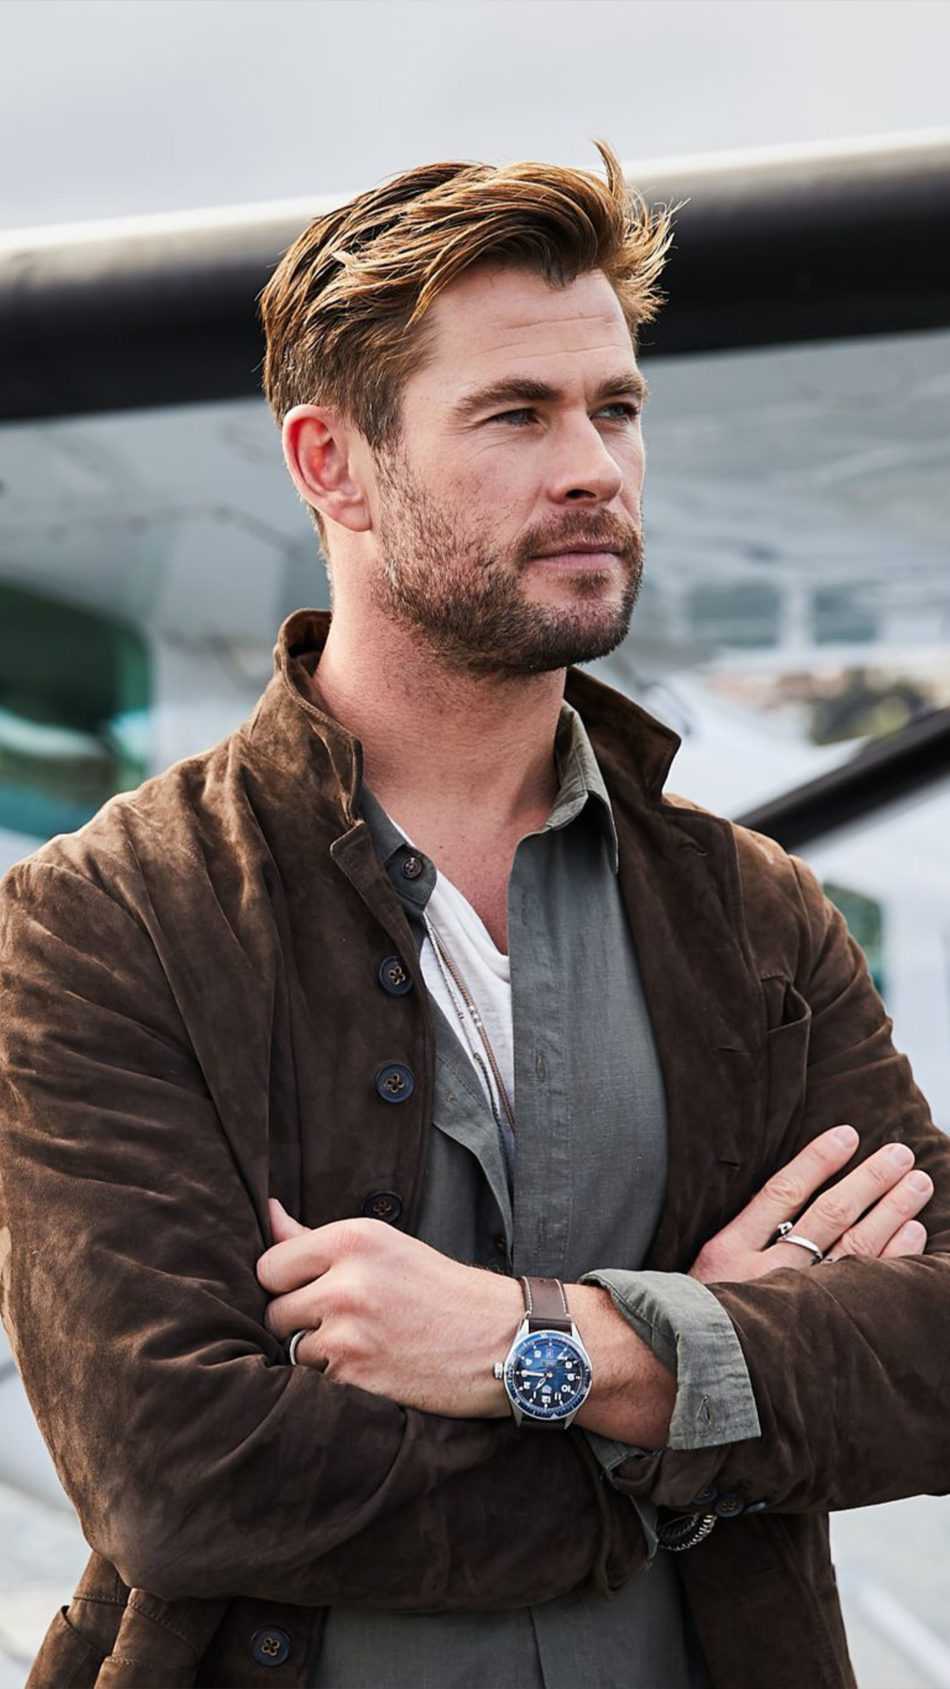 Chris Hemsworth In Extraction Wallpapers